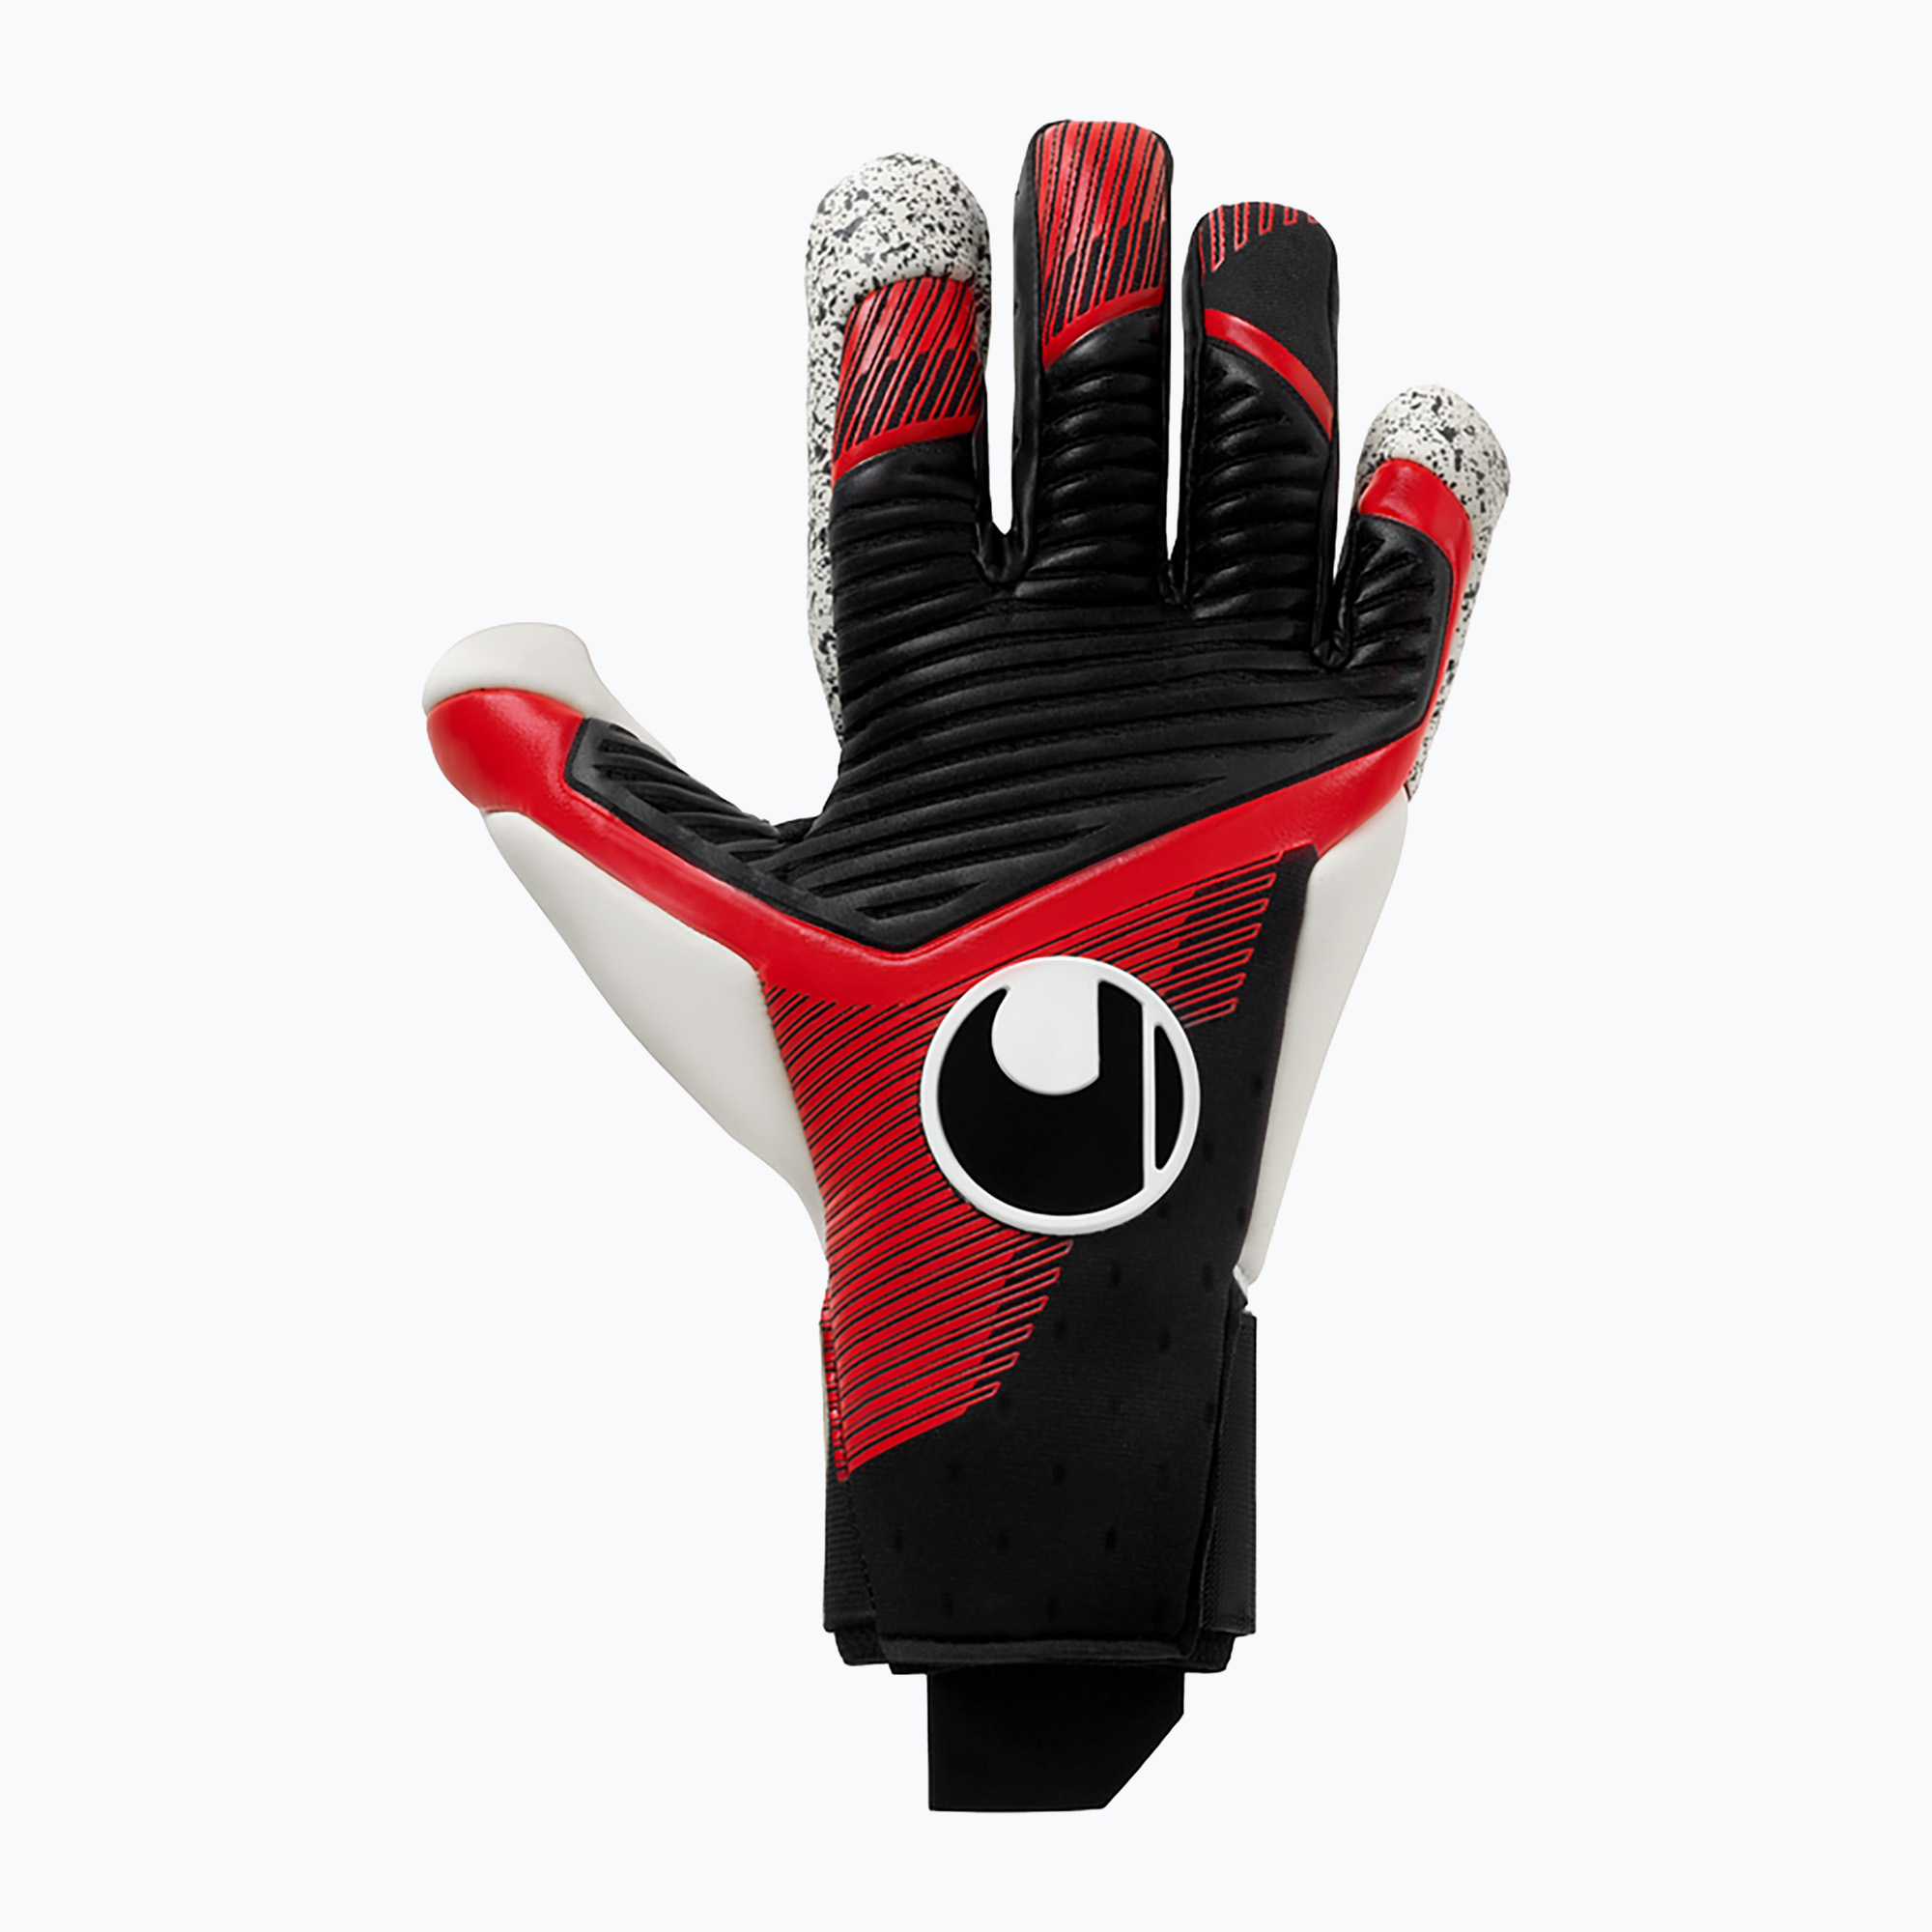 Uhlsport Powerline Supergrip  Flex вратарски ръкавици черни/червени/бели